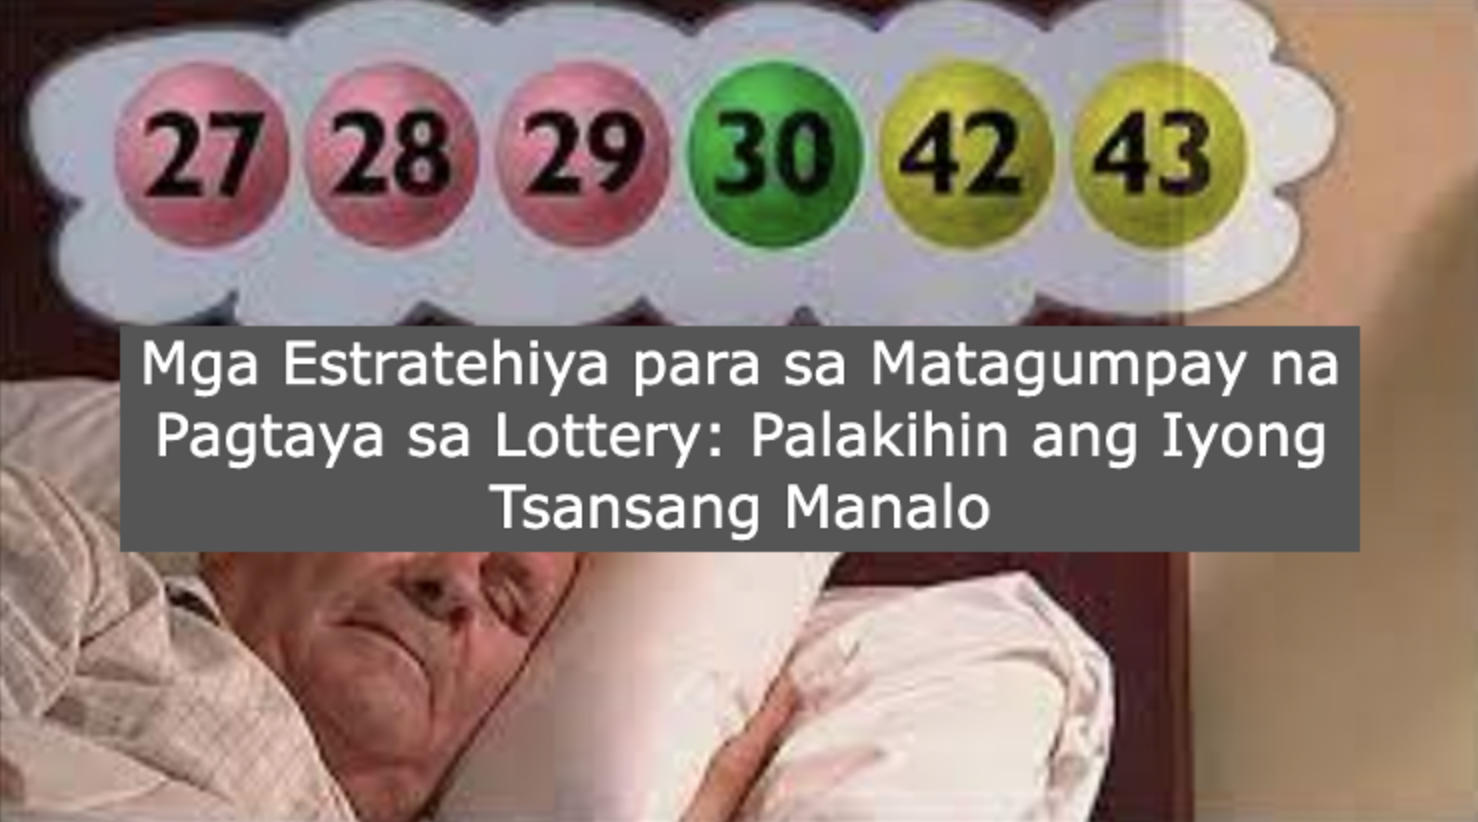 Mga Estratehiya para sa Matagumpay na Pagtaya sa Lottery: Palakihin ang Iyong Tsansang Manalo